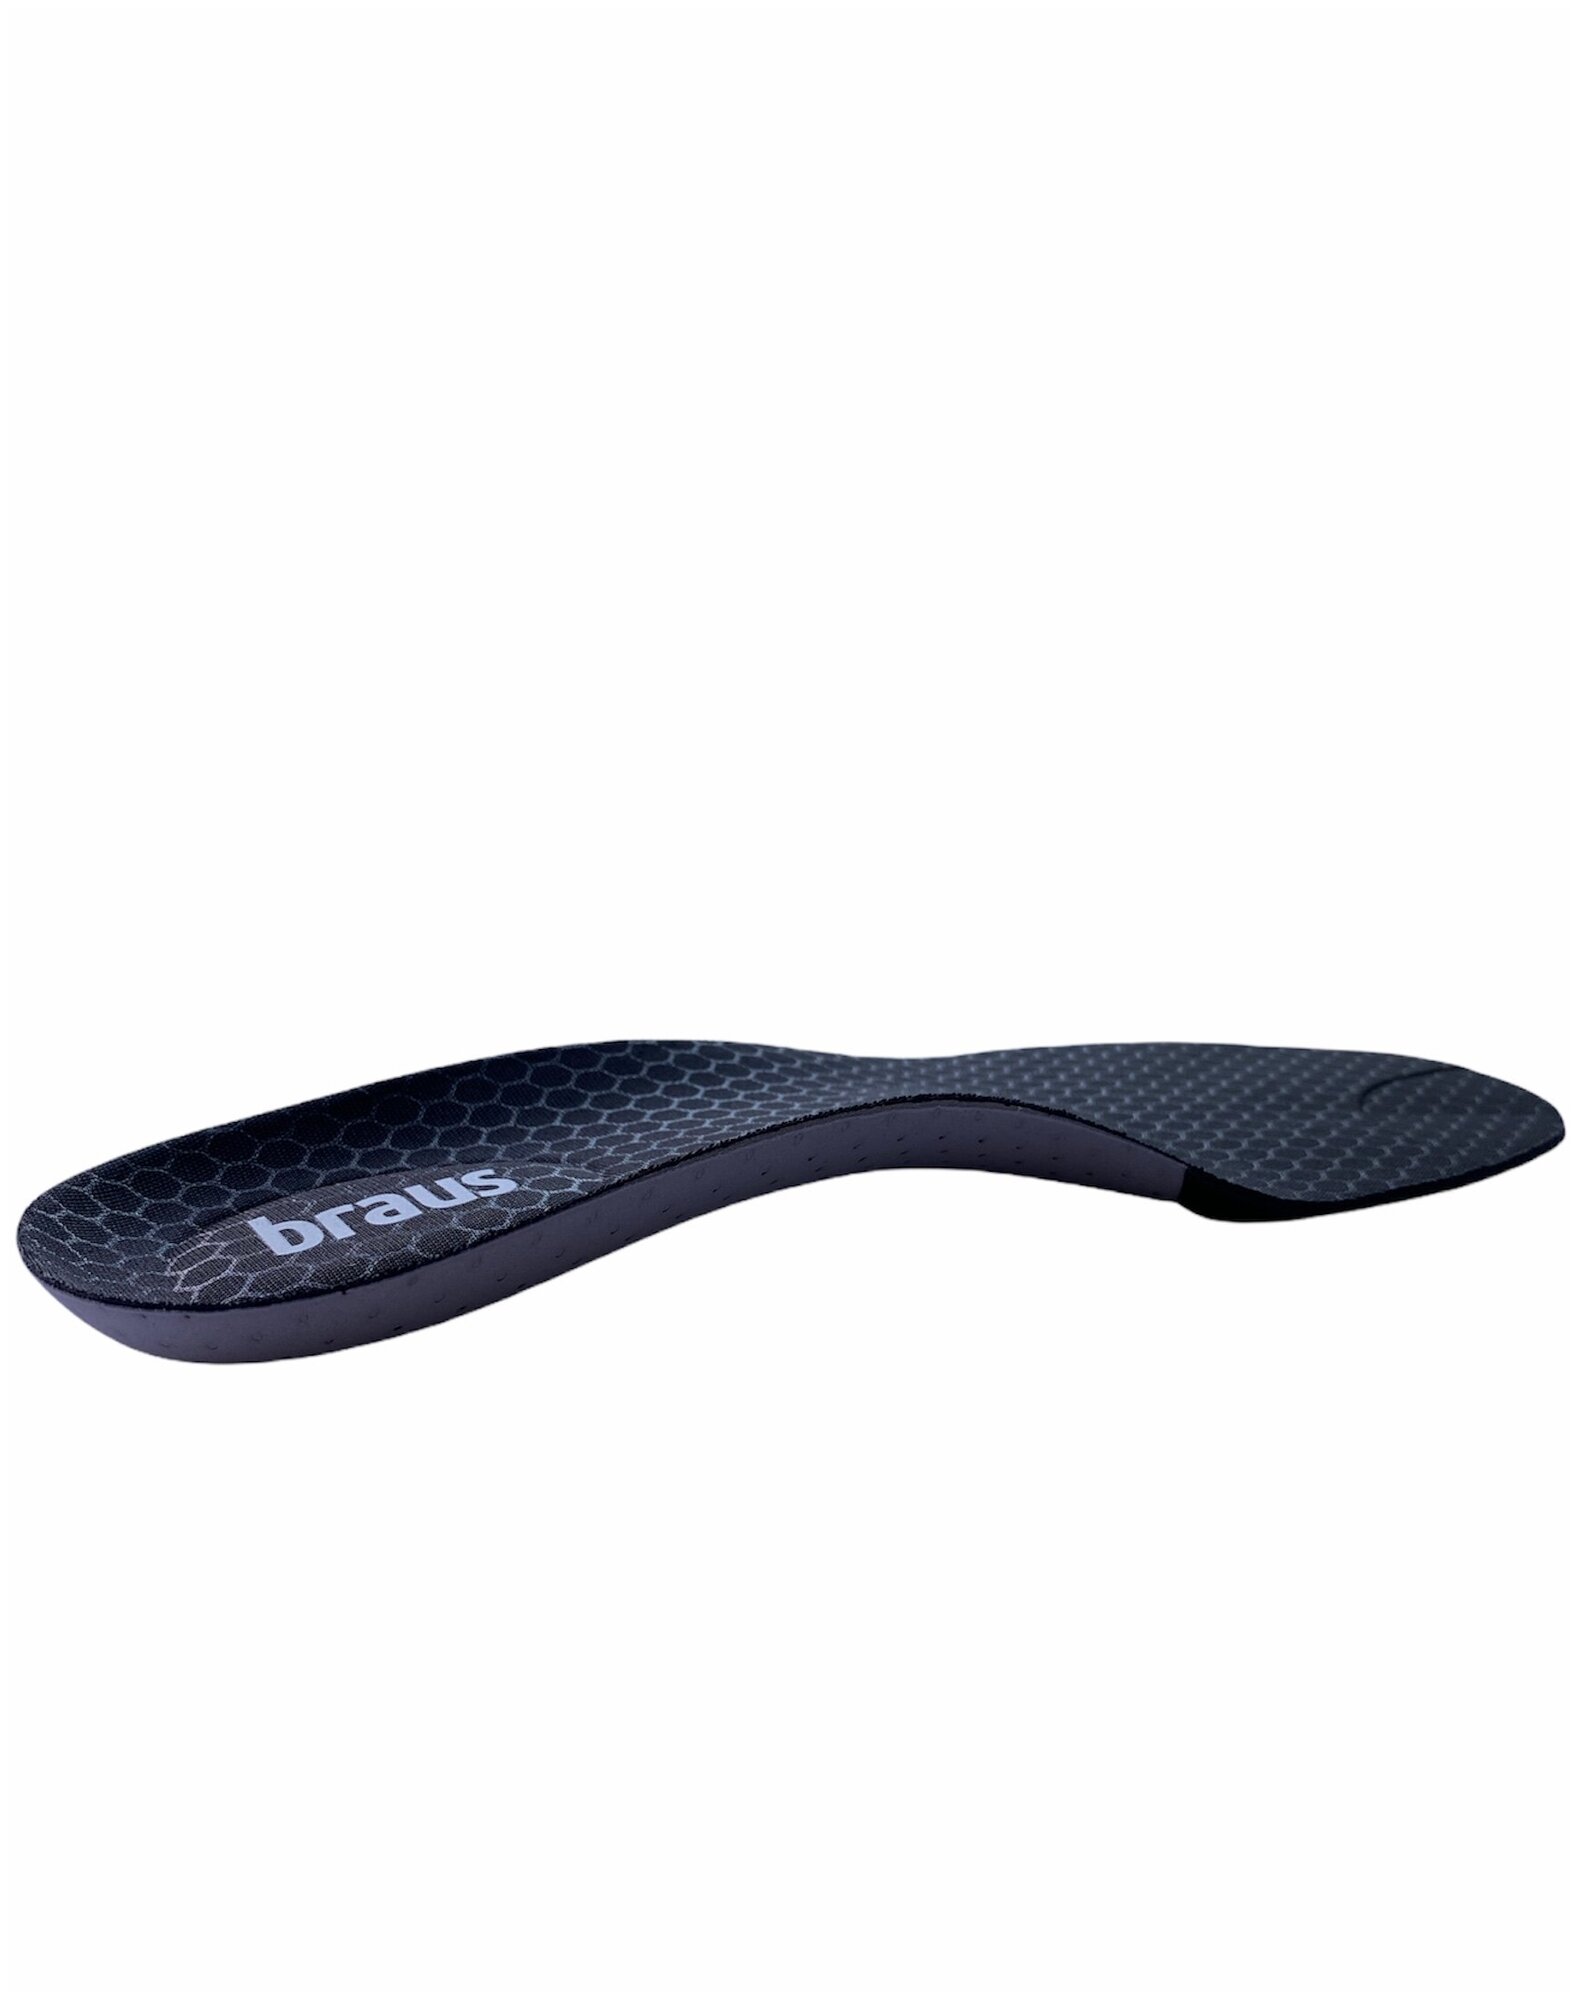 Стельки для спортивной и повседневной обуви Braus Carbon Sport. Размер 37/38